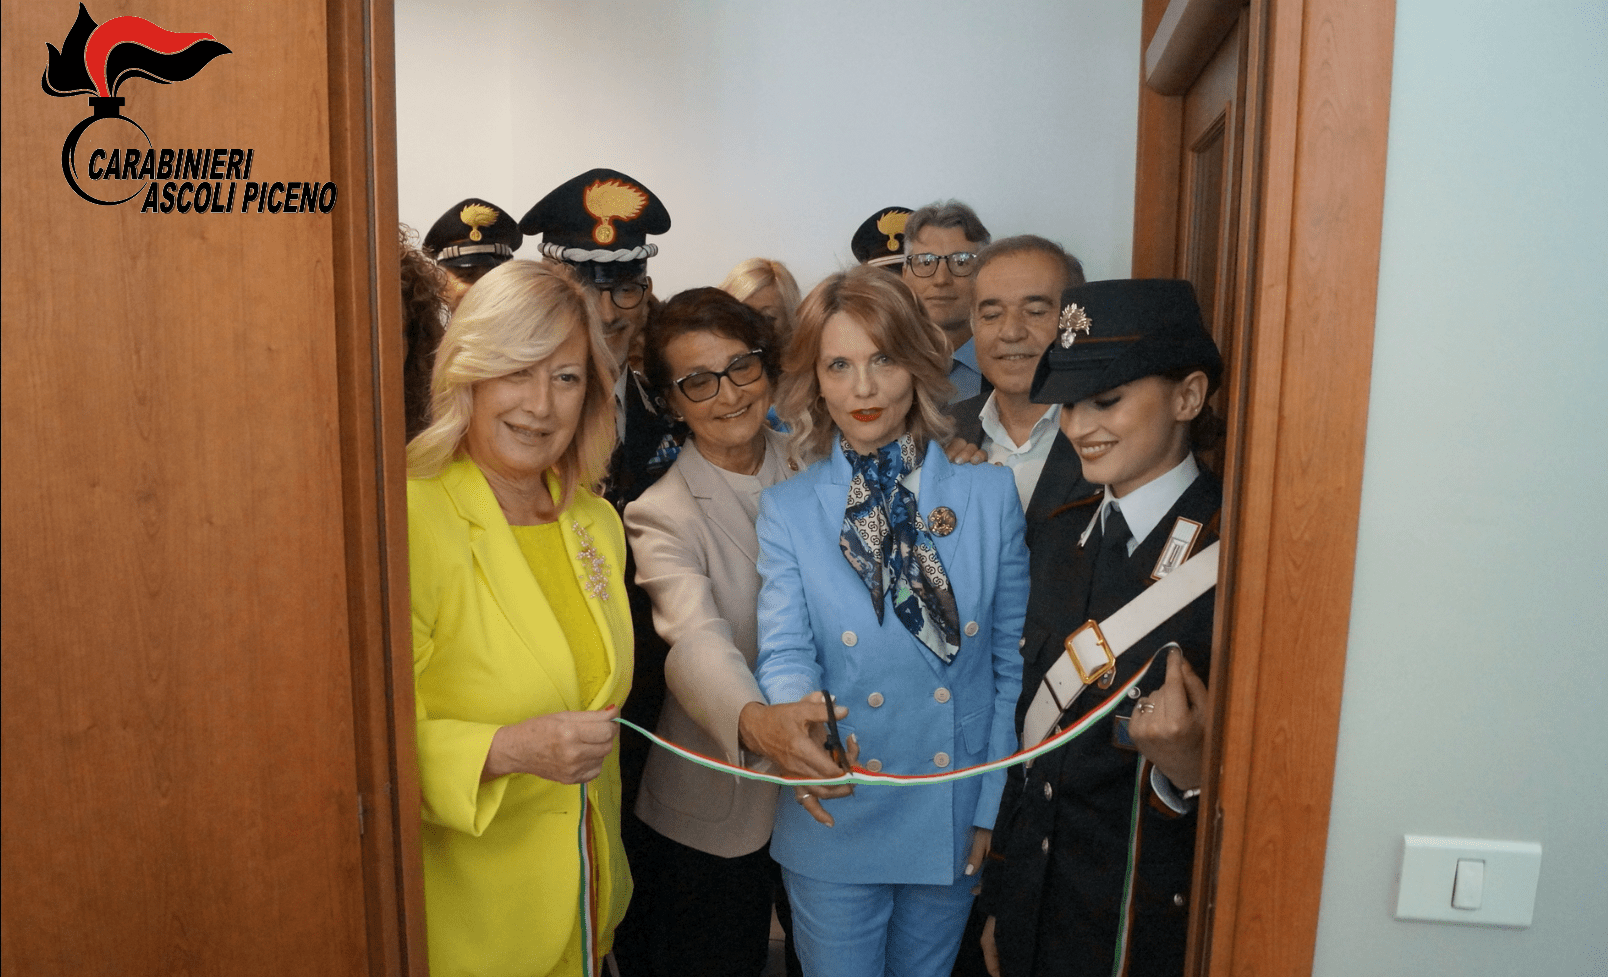 San Benedetto del Tronto: Carabinieri e Soroptimist inaugurano una nuova stanza dedicata al contrasto delle violenze di genere